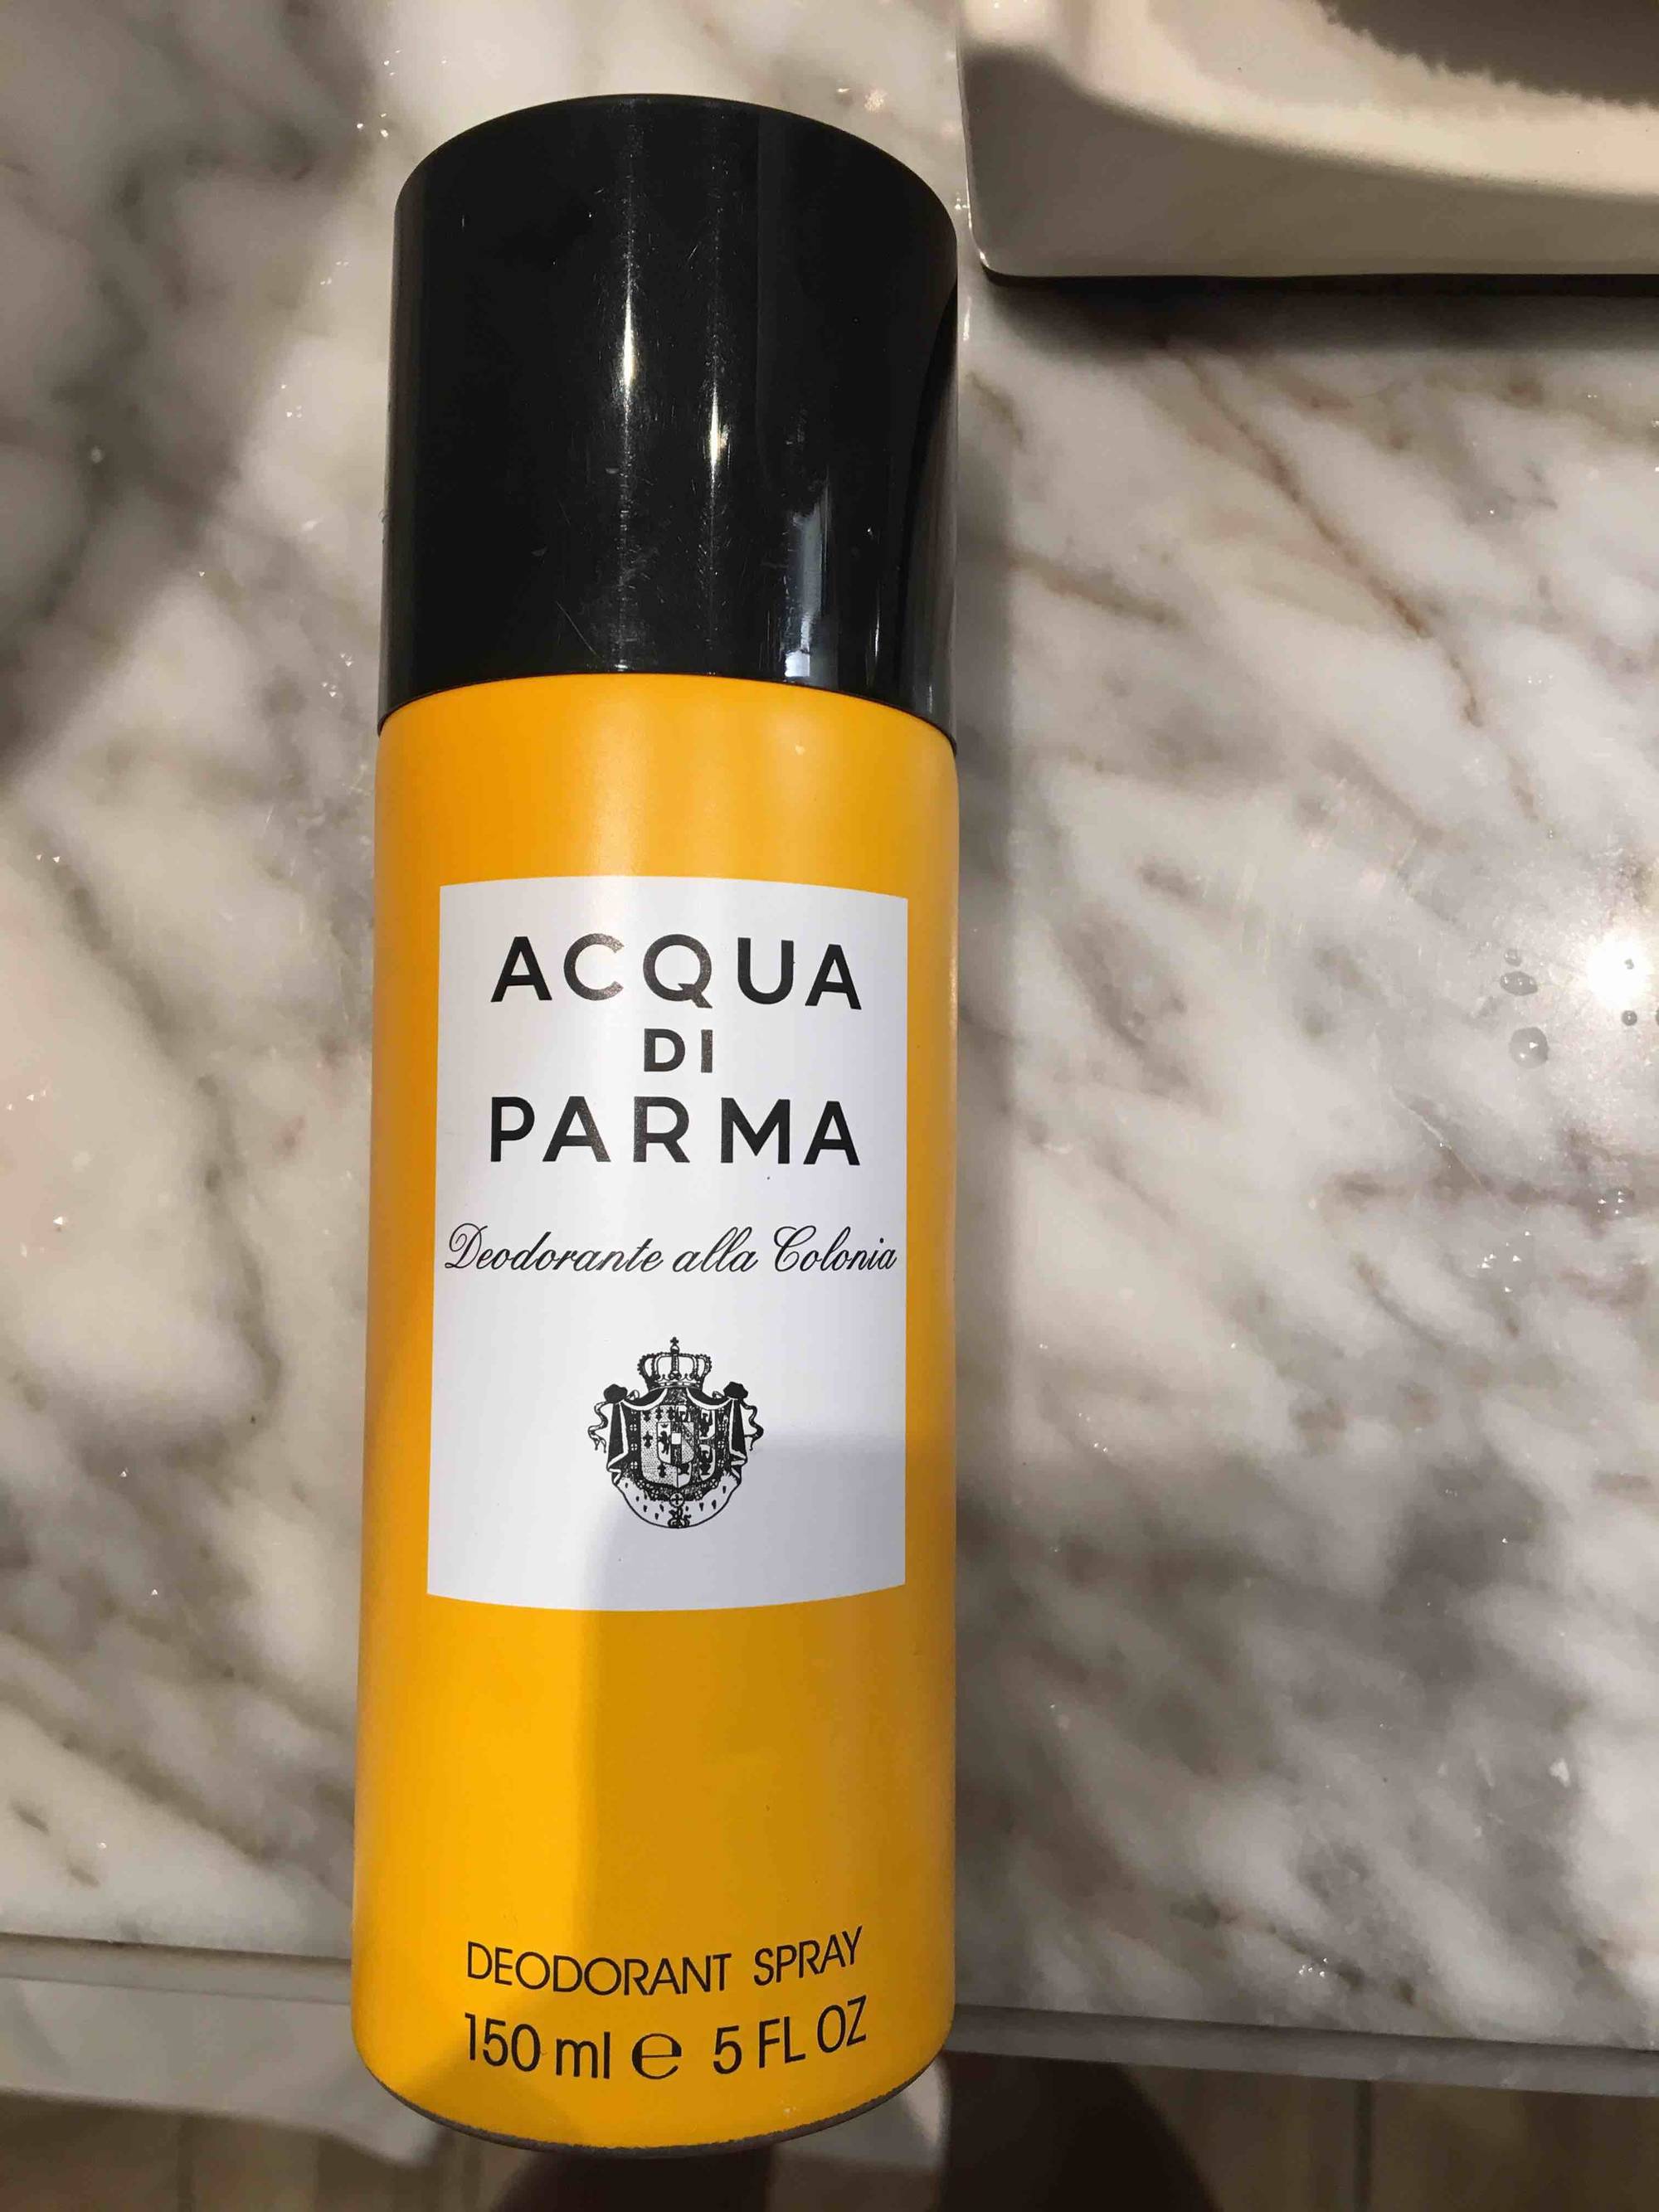 ACQUA DI PARMA - Deodorante alla Colonia - Deodorant spray